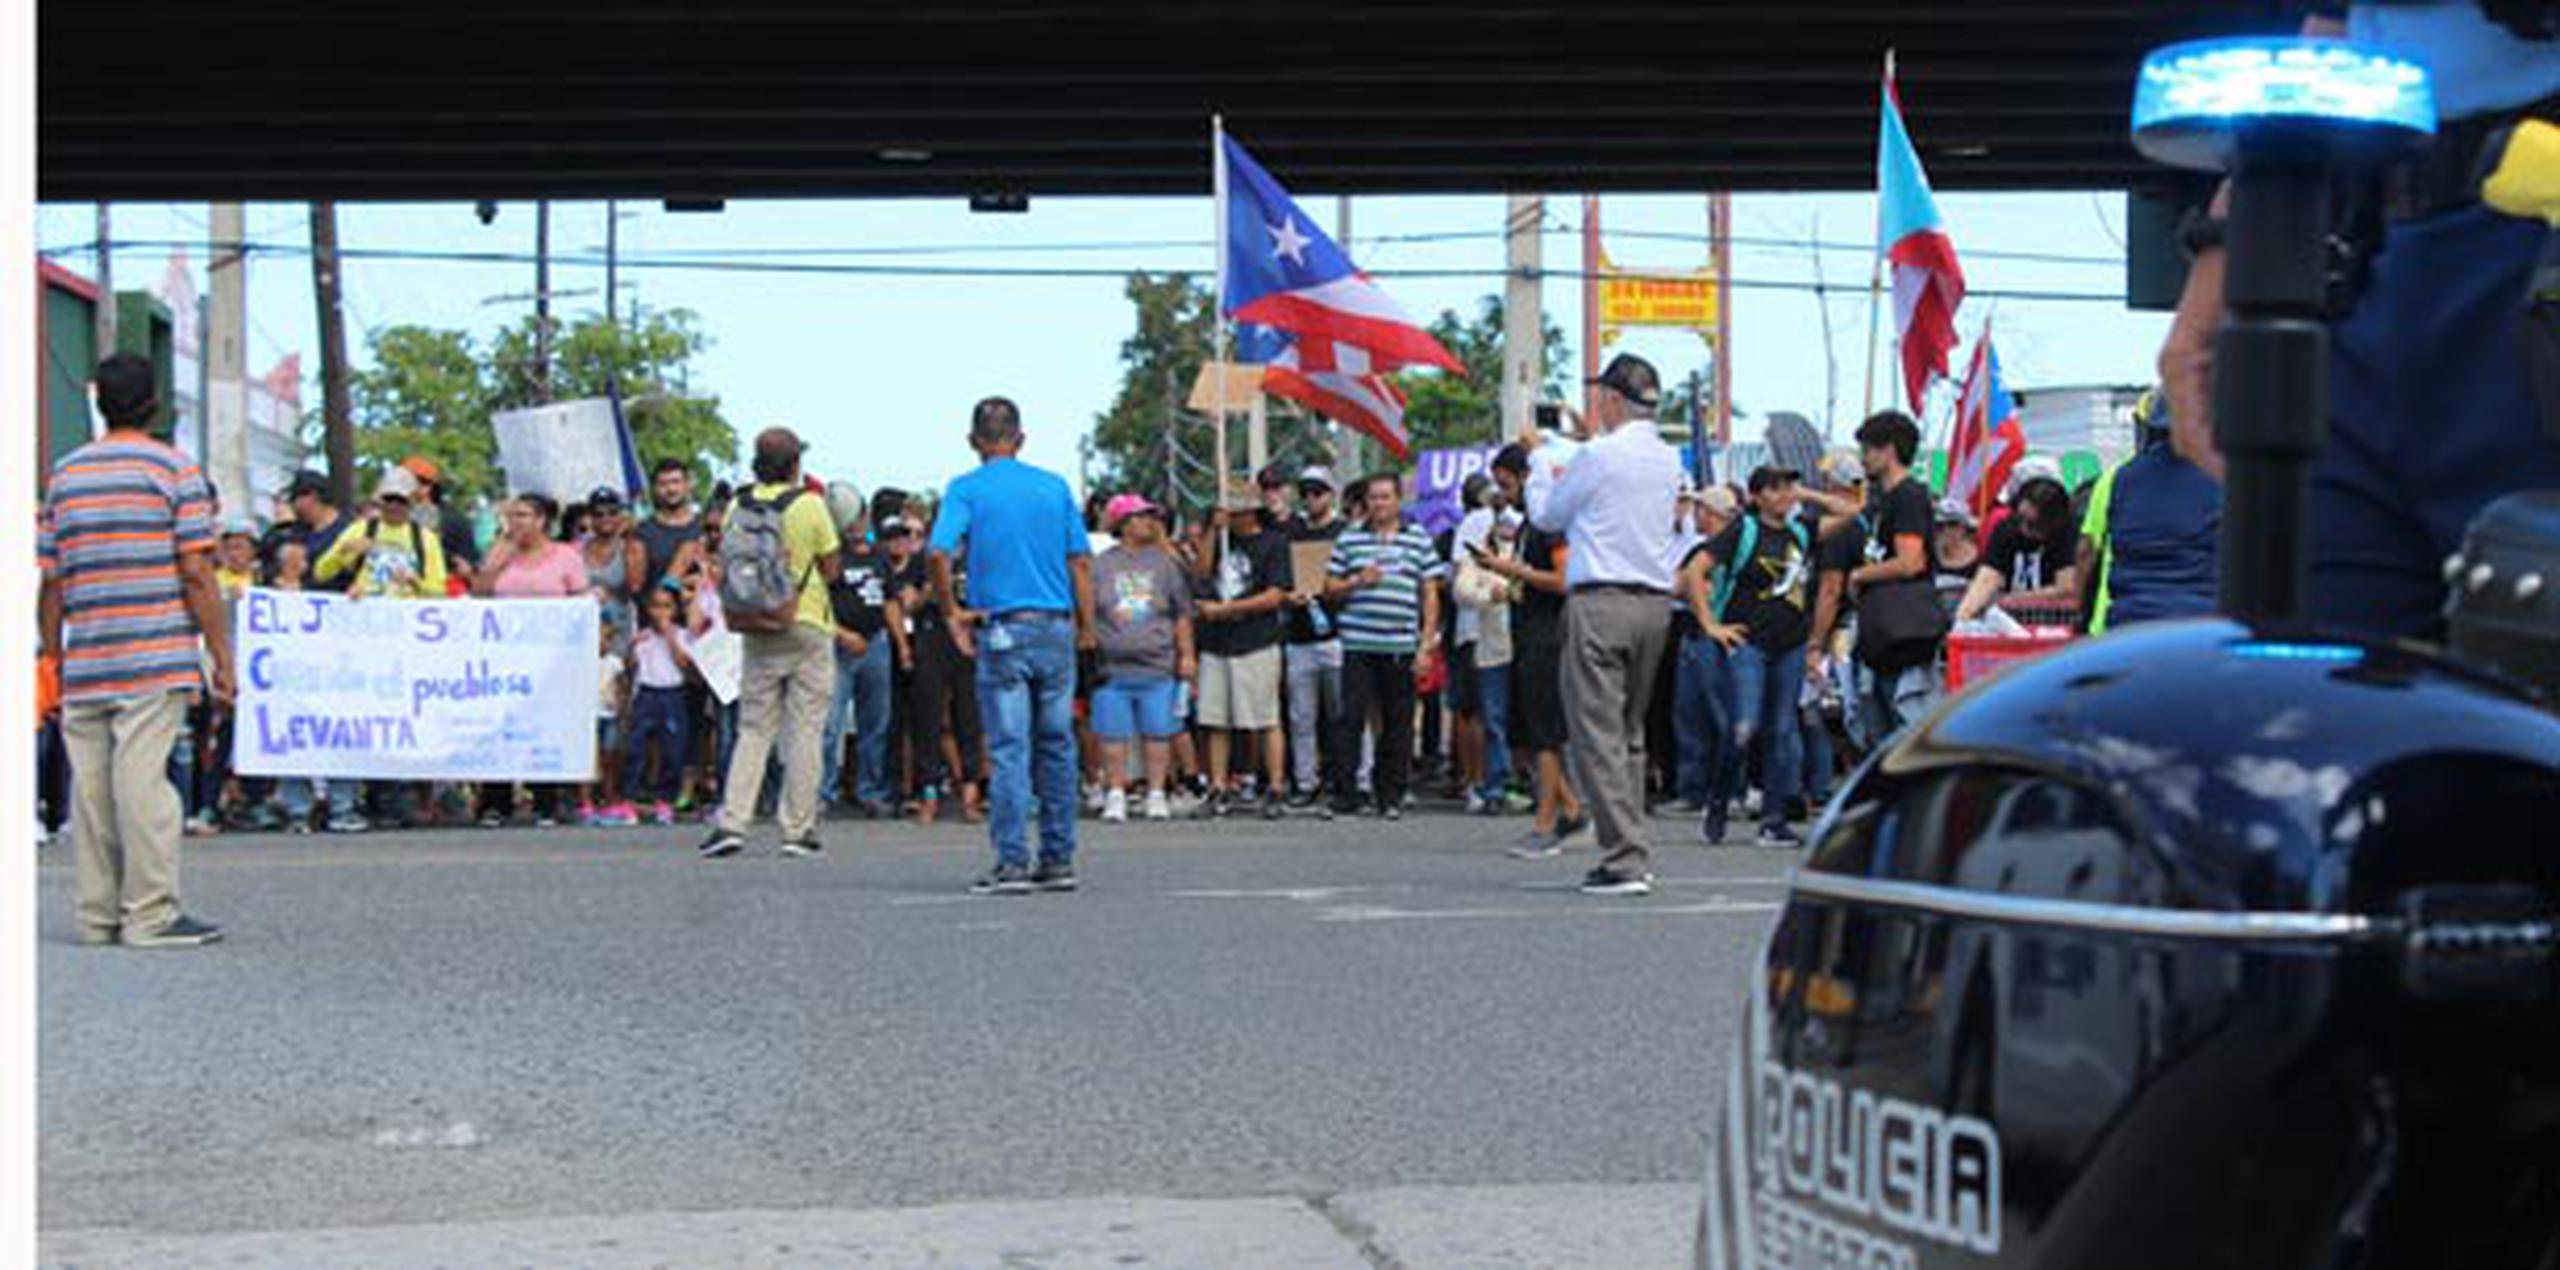 El trayecto de la marcha salió del área del viaducto. (lester.jimenez@gfrmedia.com)